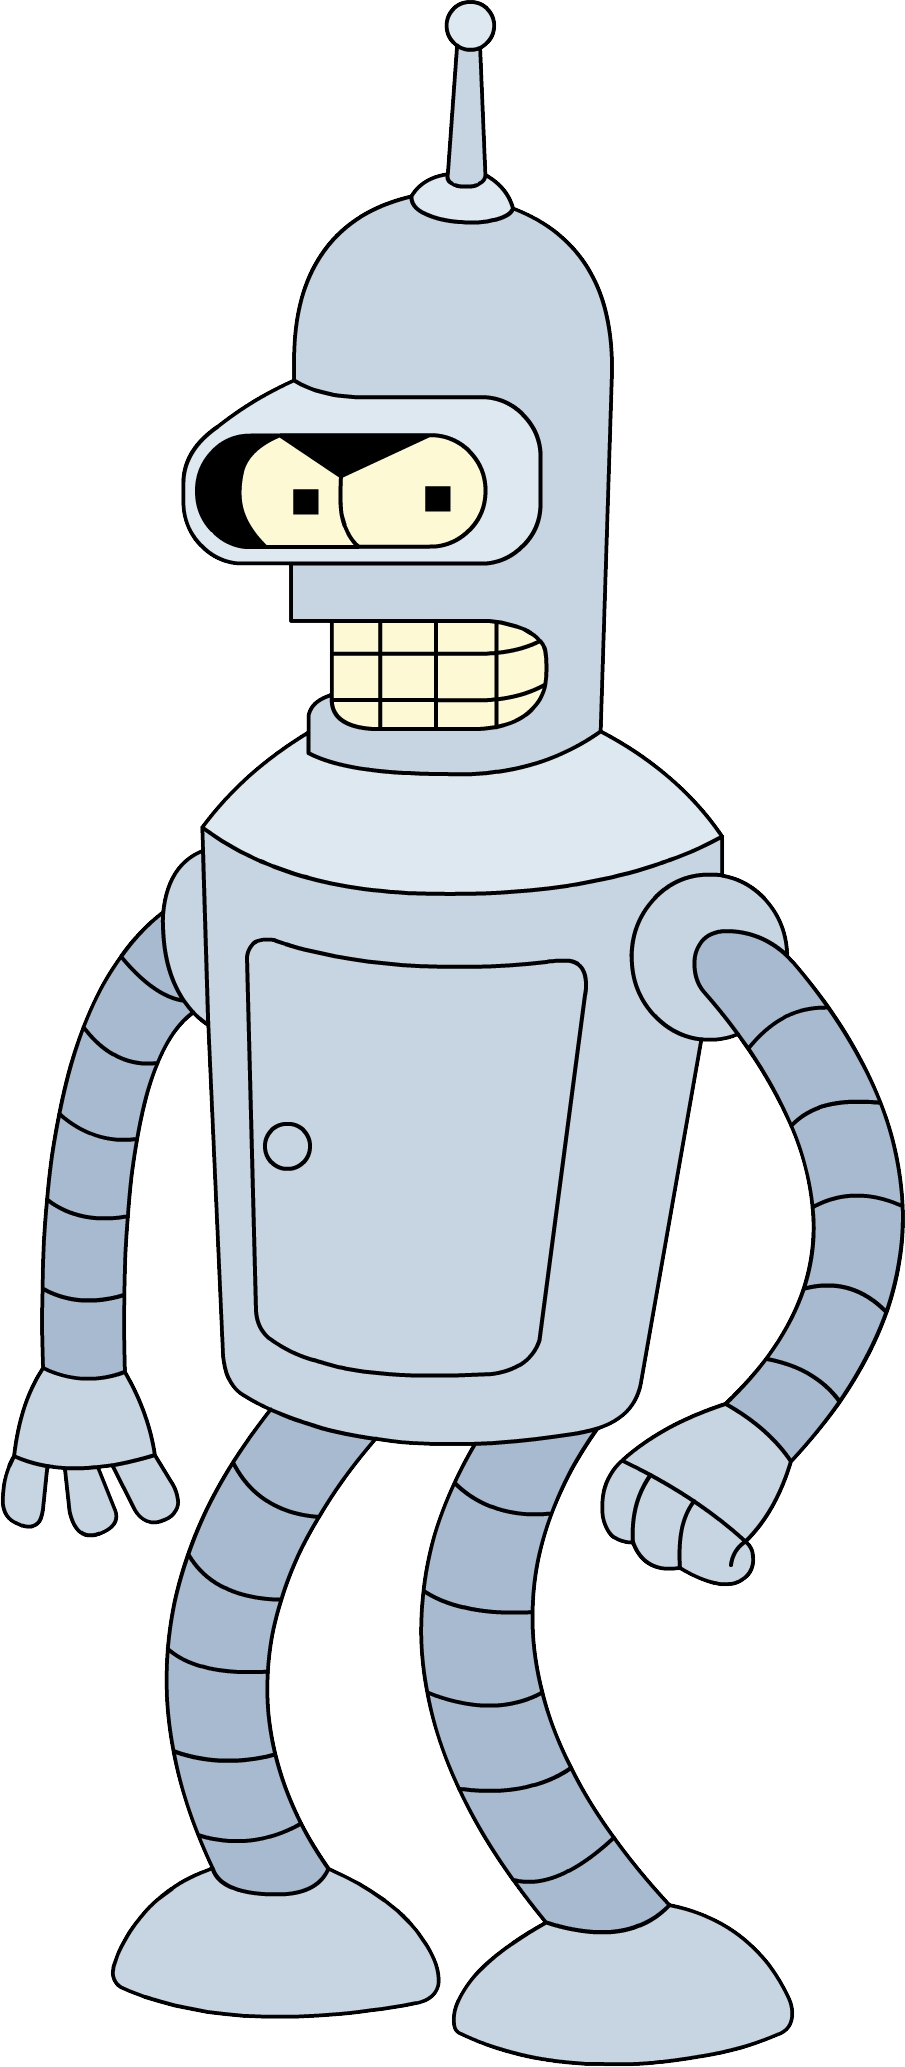 《Futurama》 Bender